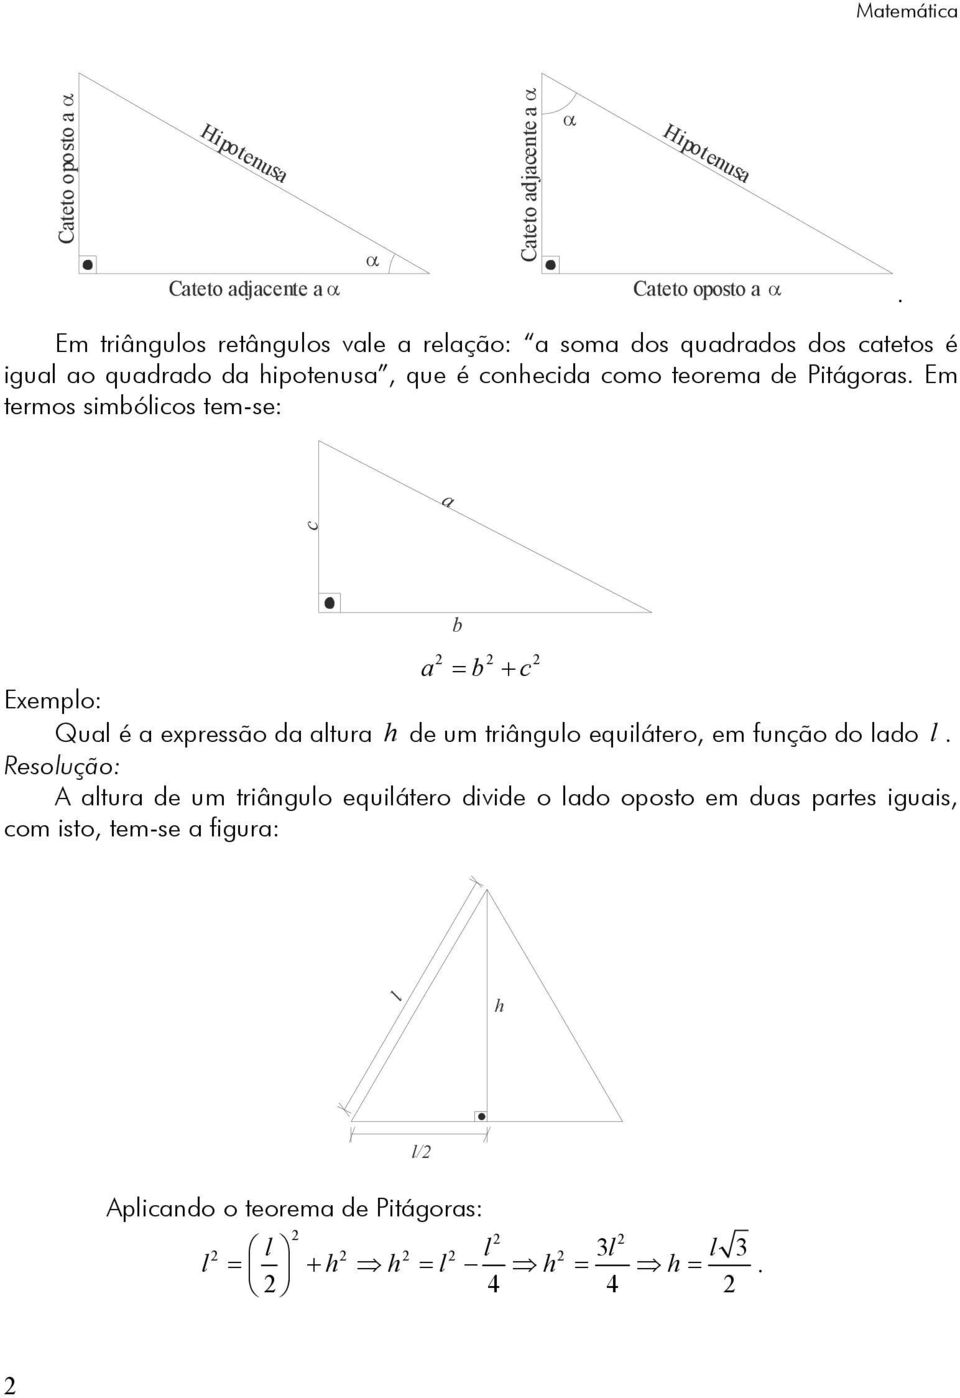 a c b a = b + c Exempl: Qual é a expressã da altura h de um triângul equiláter, em funçã d lad l.